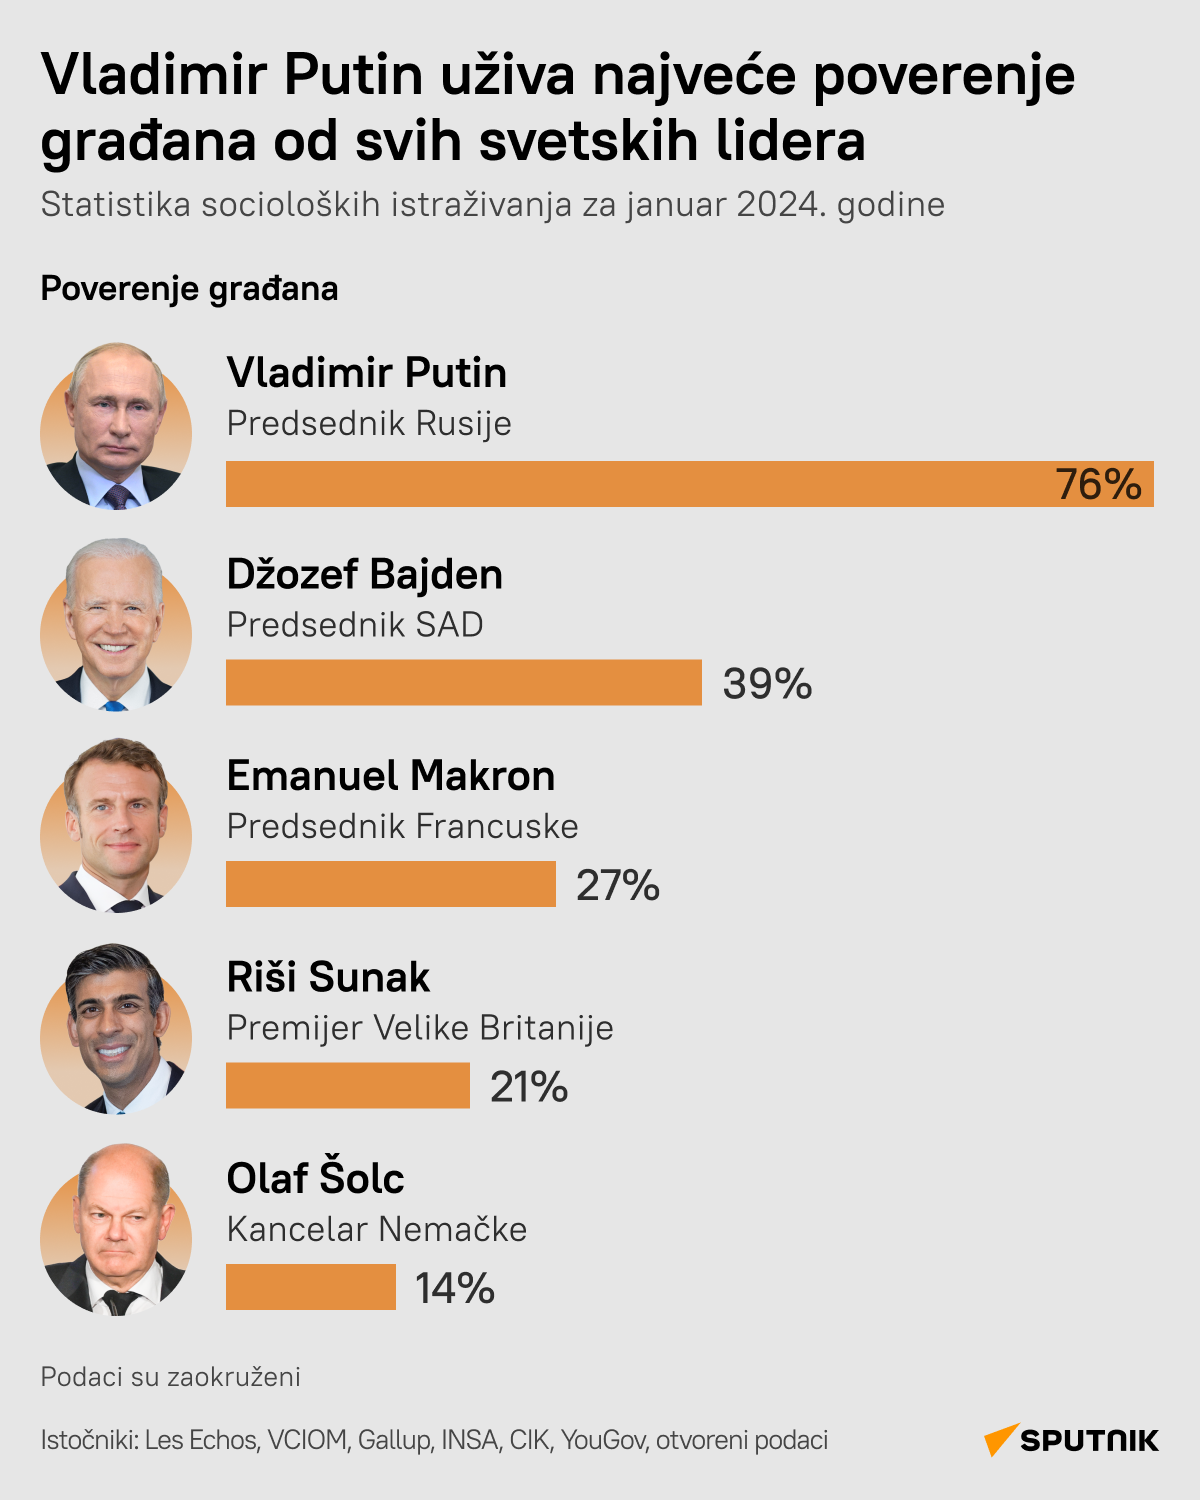 Rejting popularnosti svetskih lidera - Sputnik Srbija